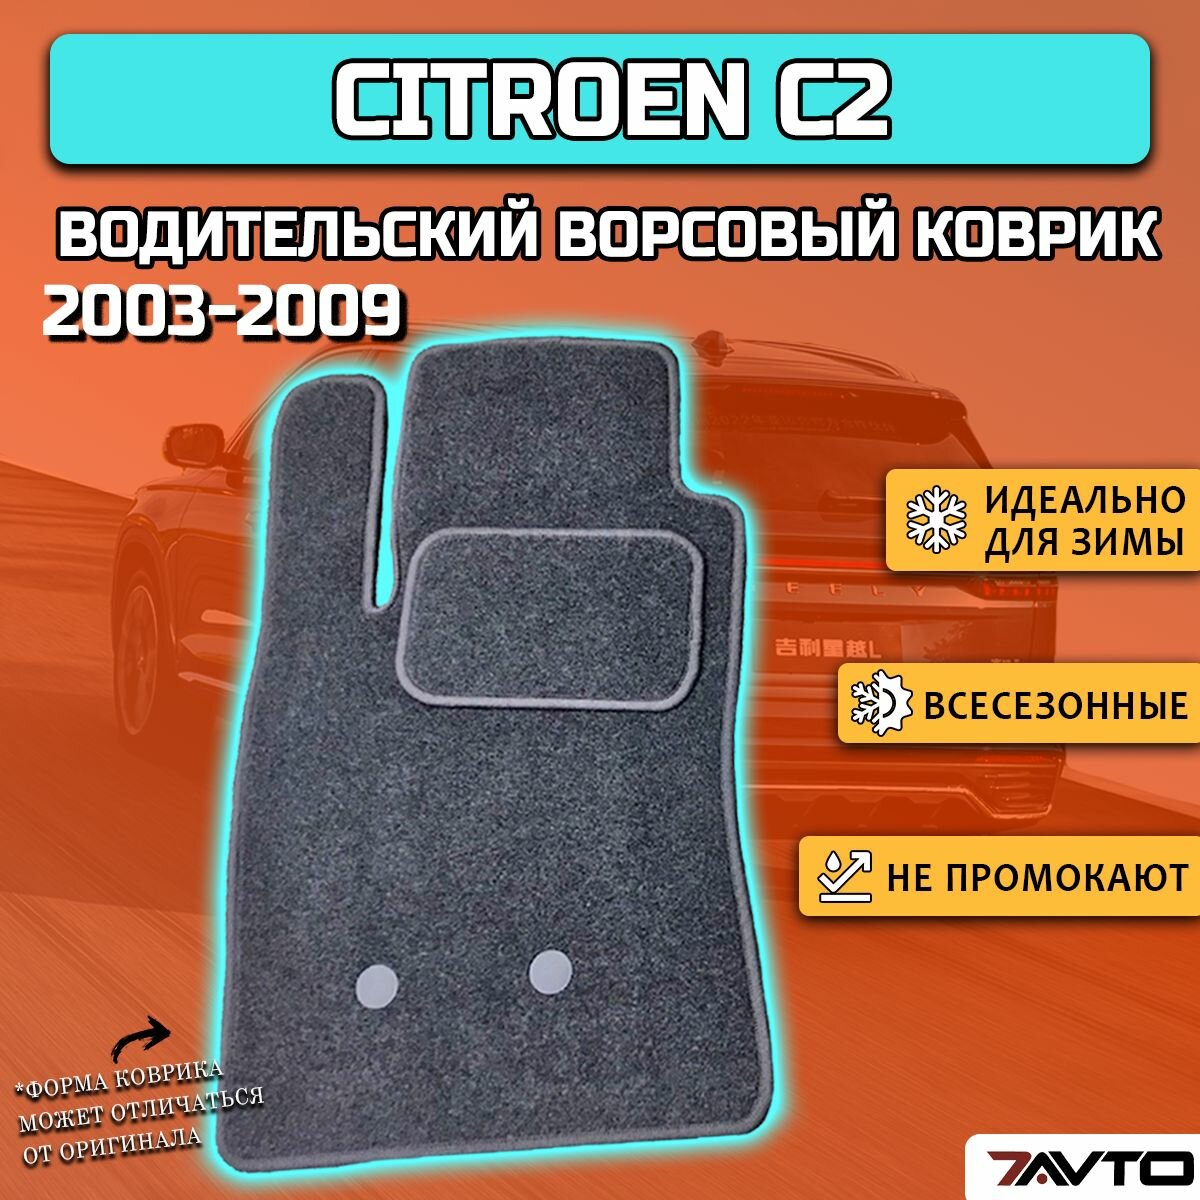 Водительский ворсовый коврик ECO на Citroen C2 2003-2009 / Ситроен Ц2